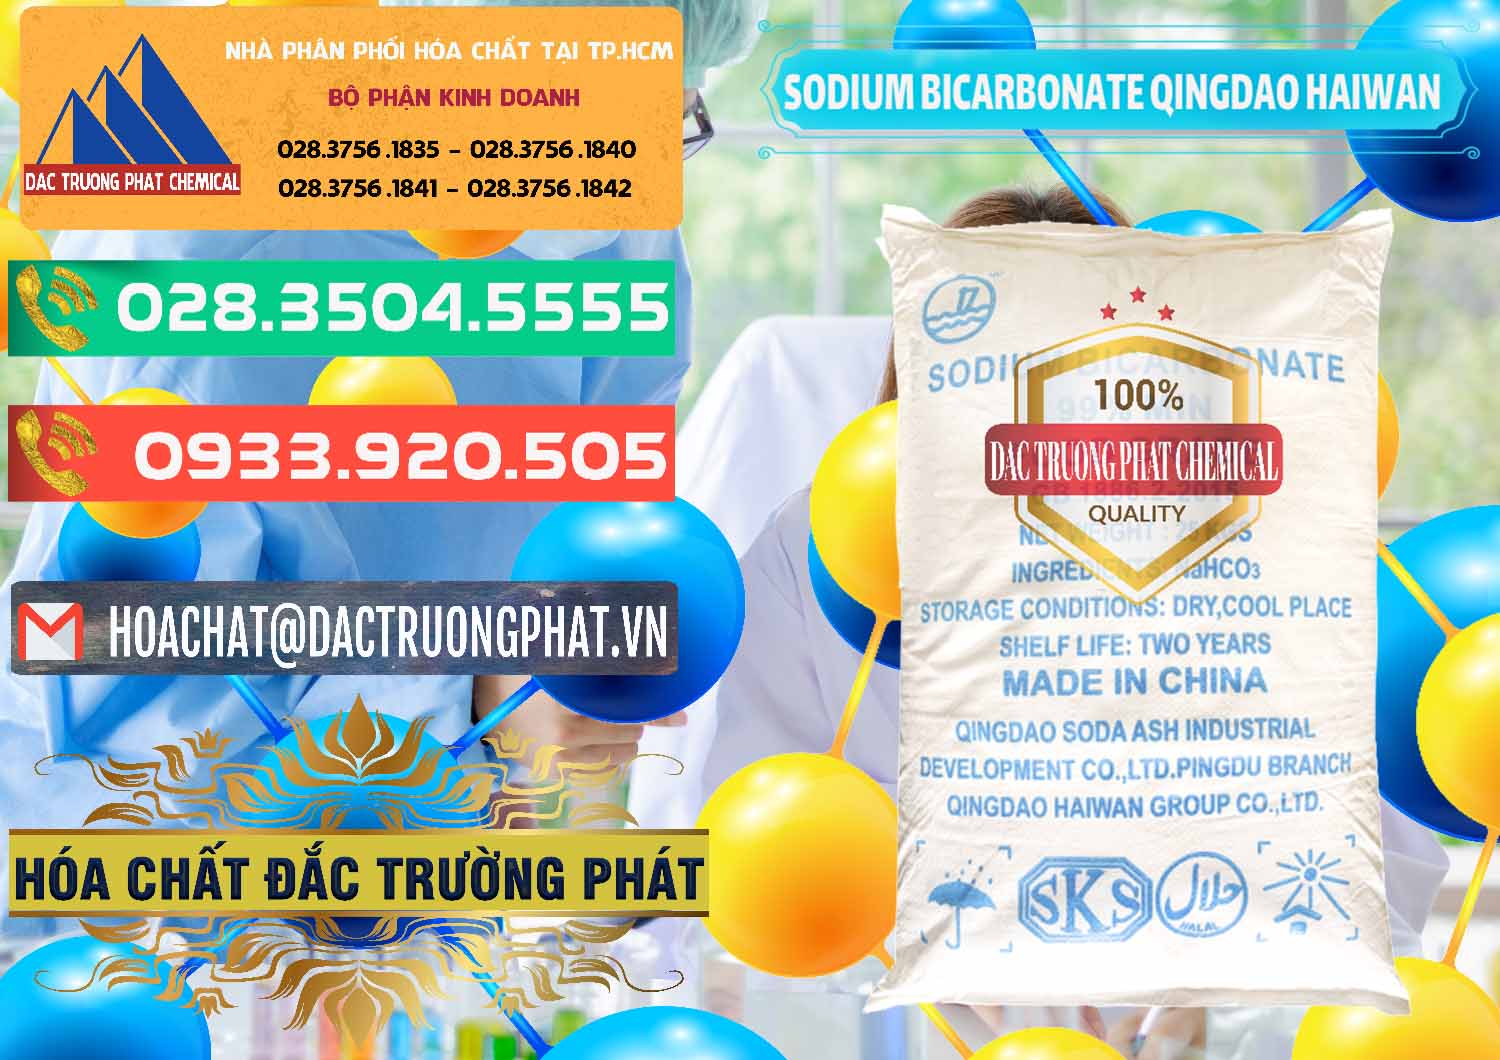 Cty bán & phân phối Sodium Bicarbonate – Bicar NaHCO3 Food Grade Qingdao Haiwan Trung Quốc China - 0258 - Cty cung cấp _ kinh doanh hóa chất tại TP.HCM - congtyhoachat.com.vn